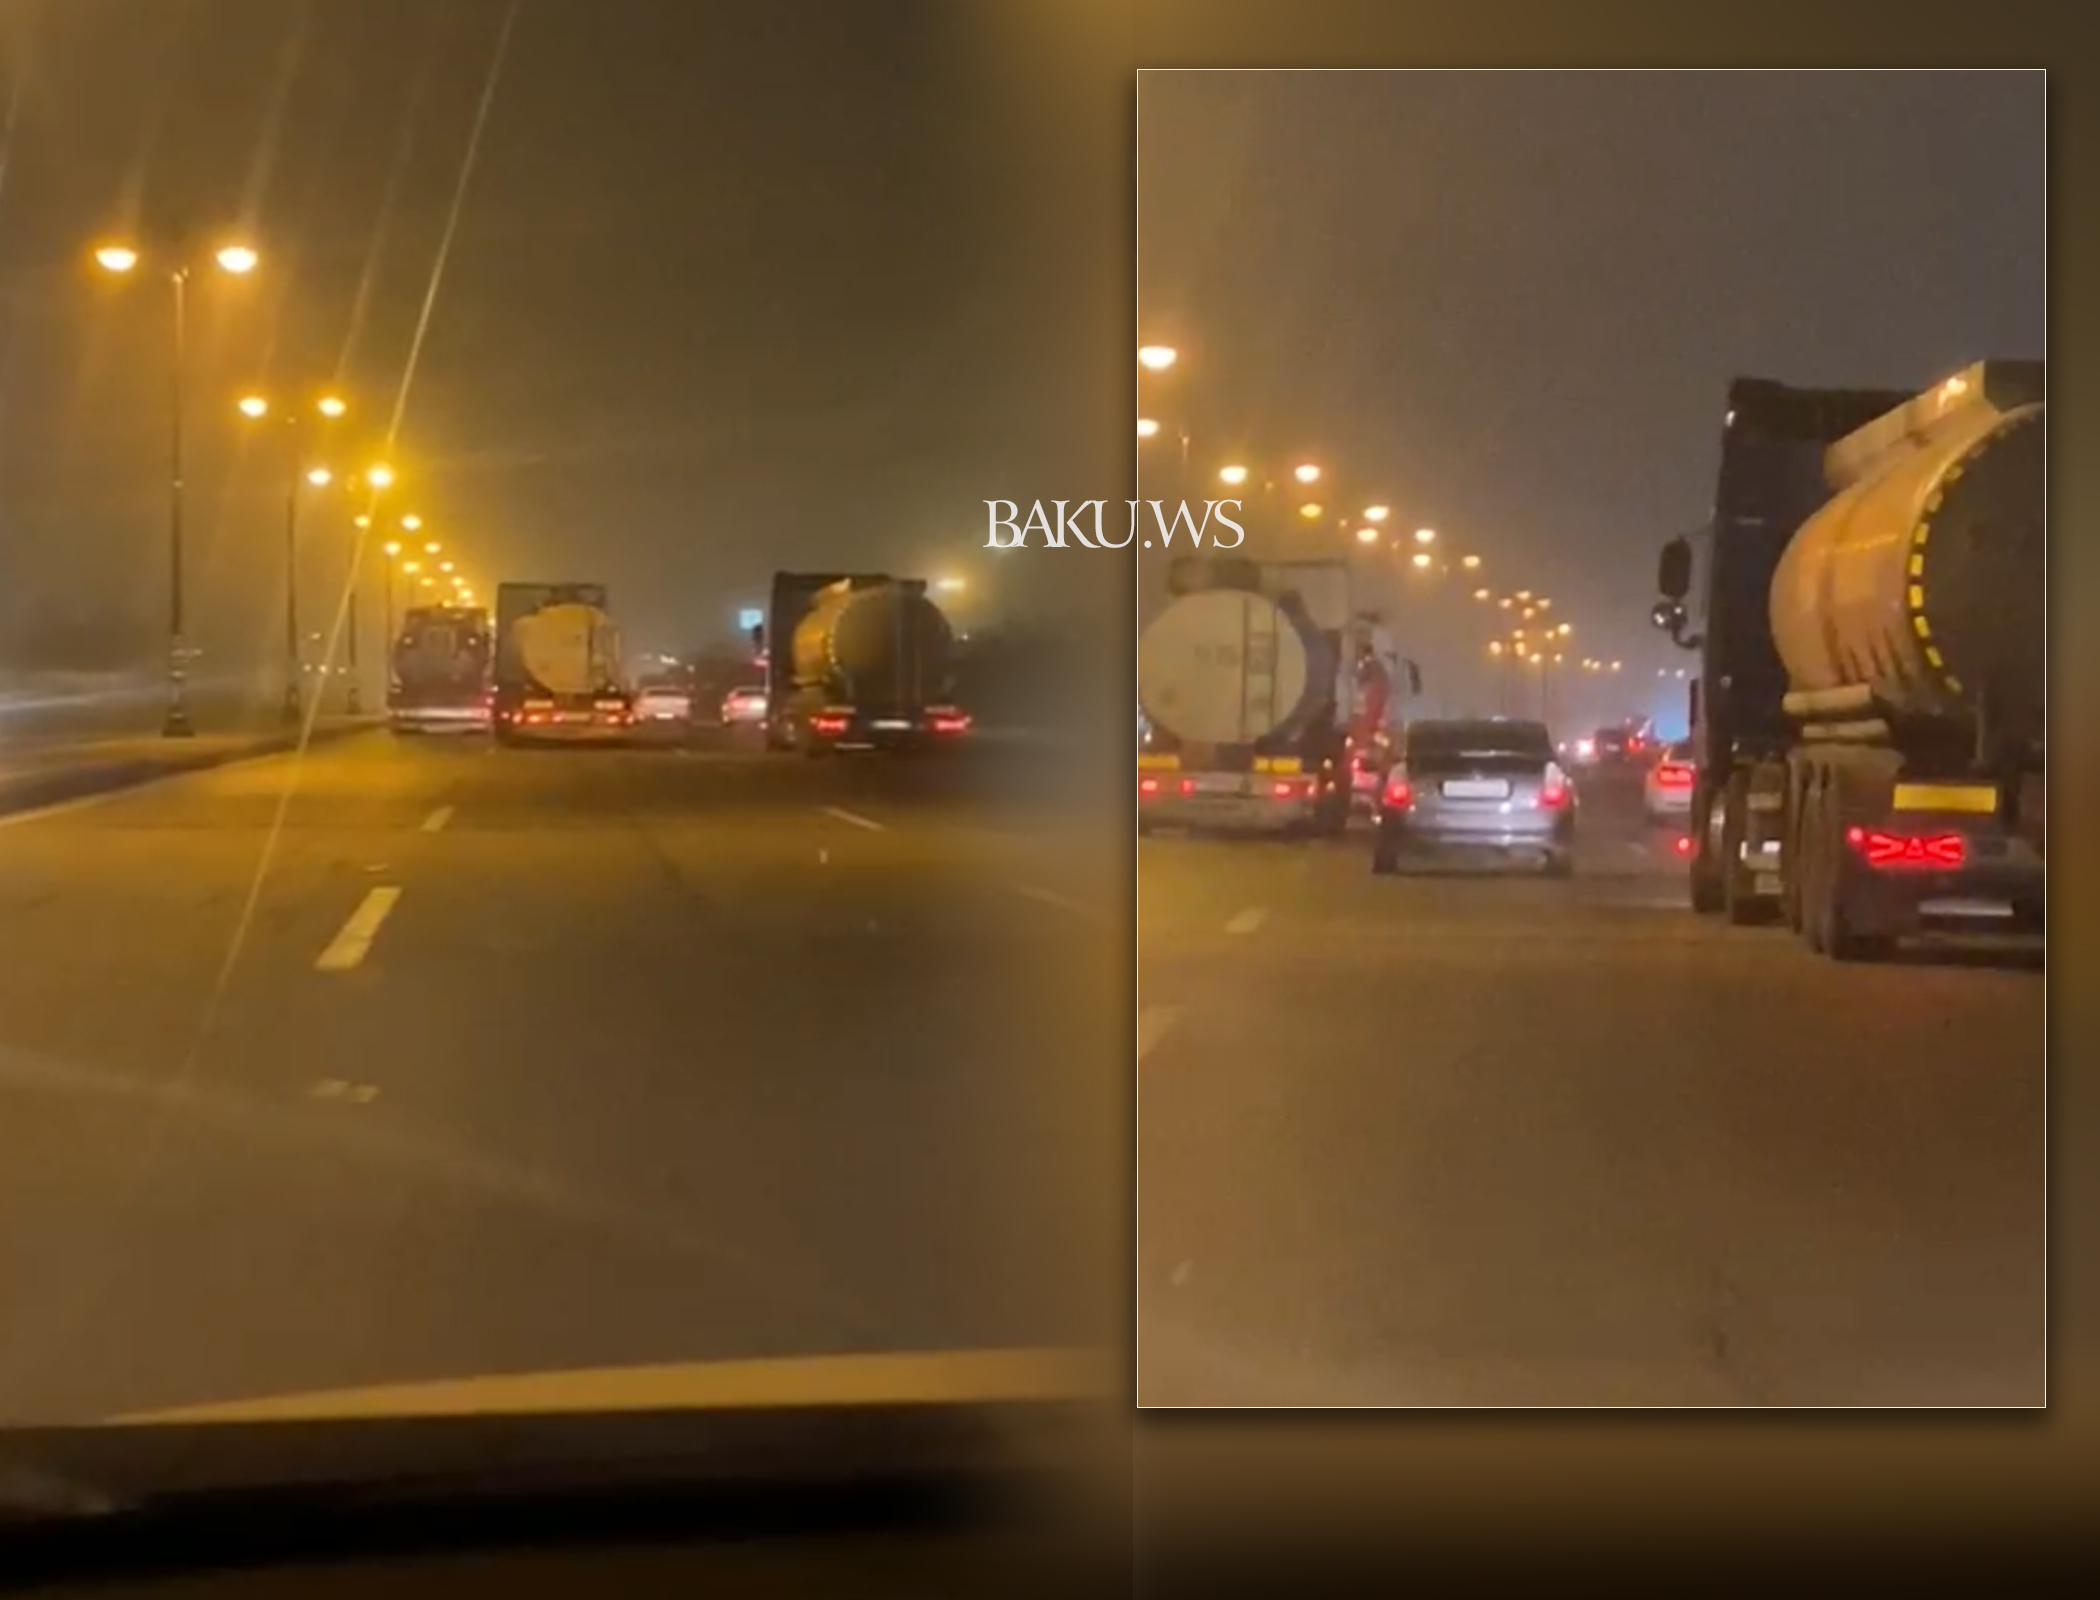 Опасная ситуация на дороге: В Баку бензовозы устроили гонки